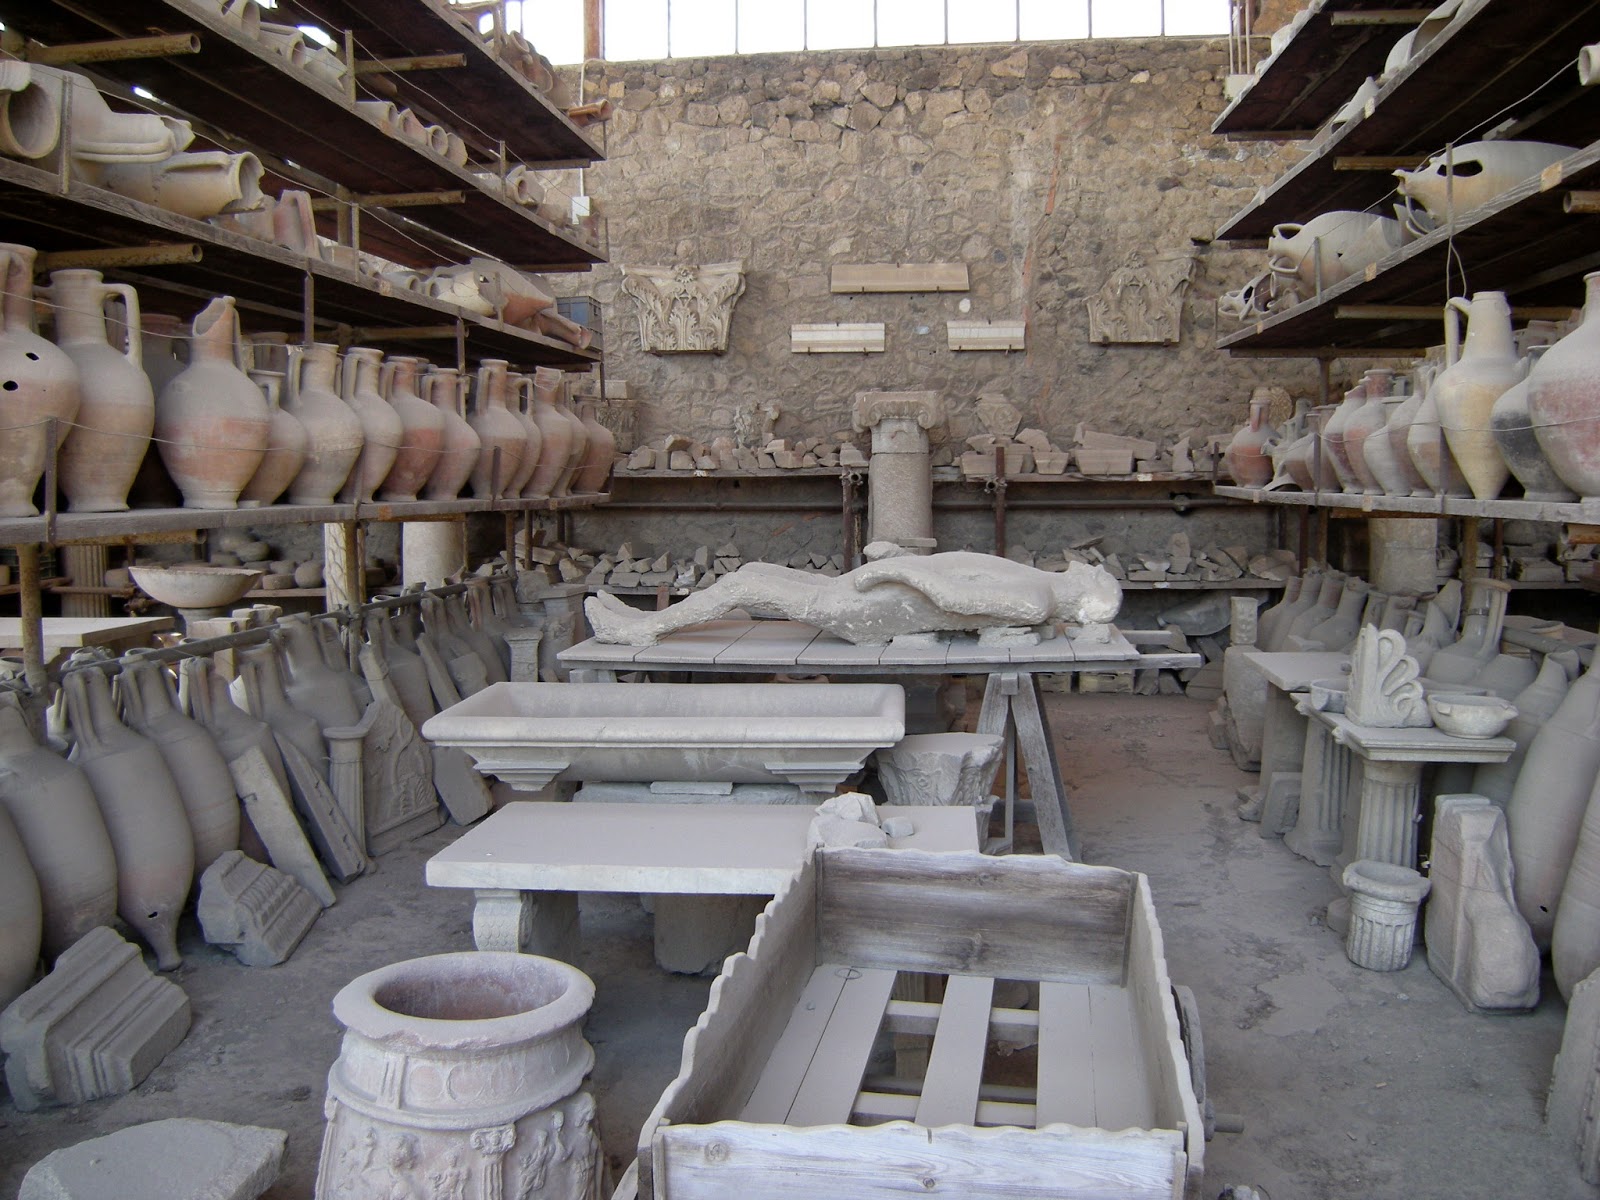 Restos Arqueológicos hallados en la ciudad de Pompeya, desde vasijas hasta restos humanos.